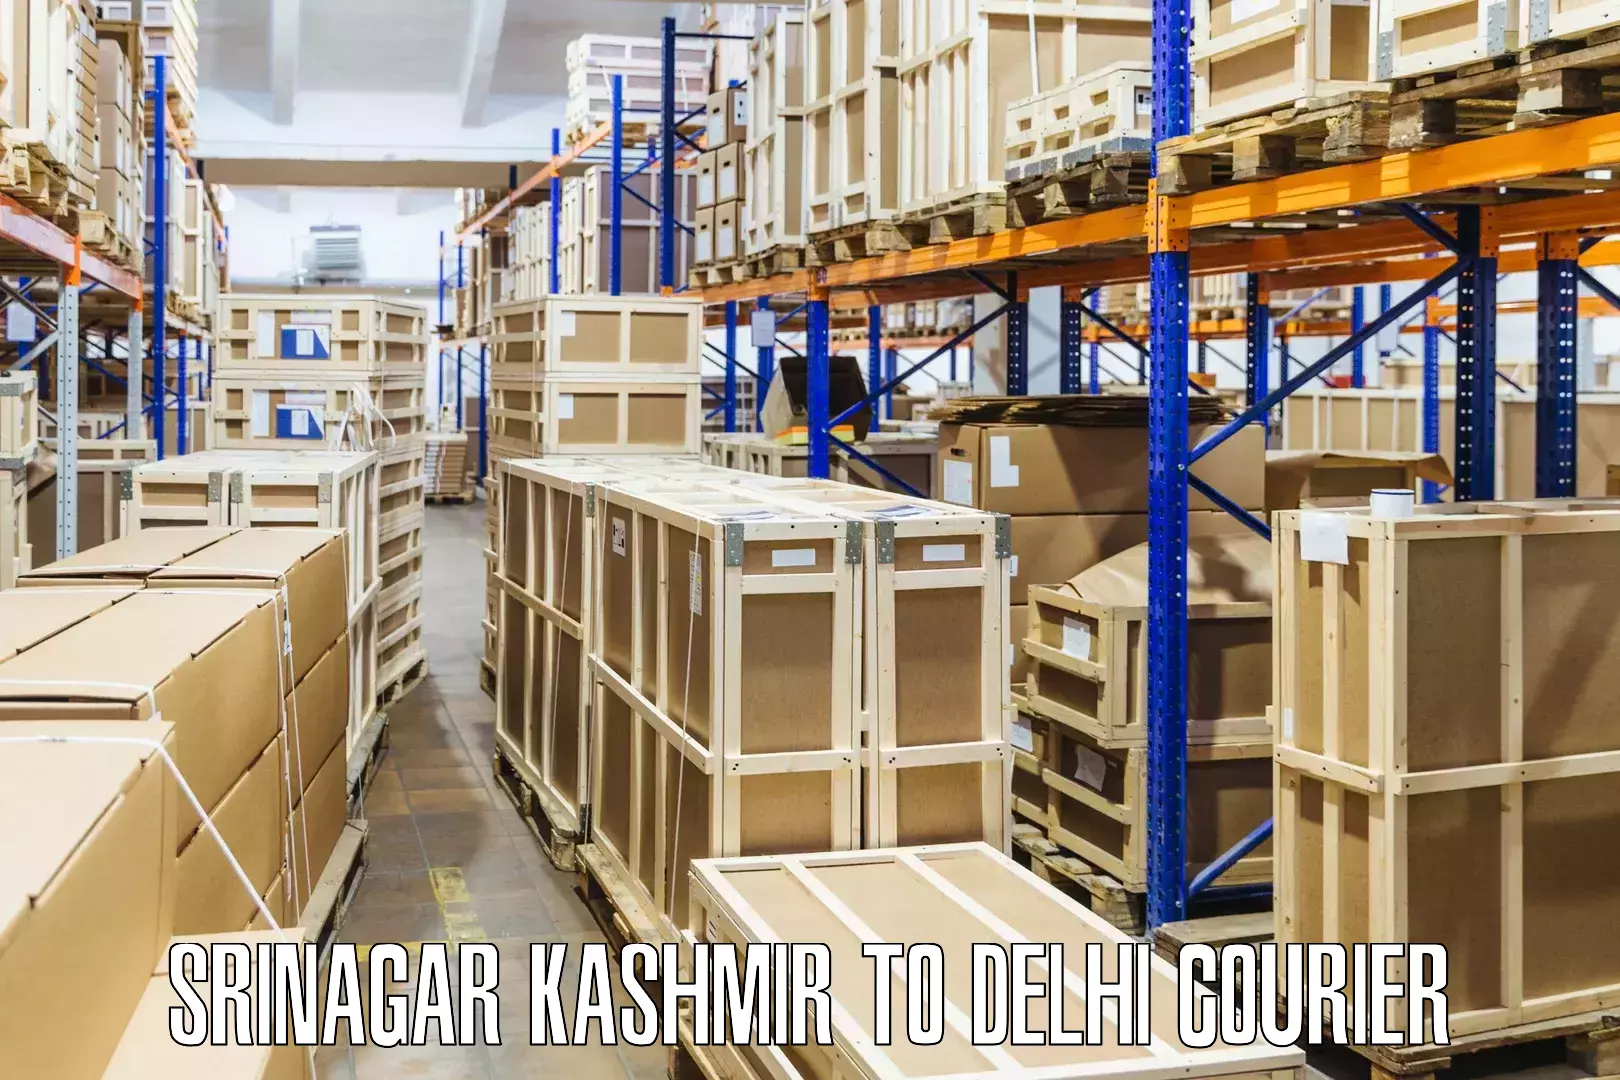 Multi-national courier services Srinagar Kashmir to Jamia Millia Islamia New Delhi